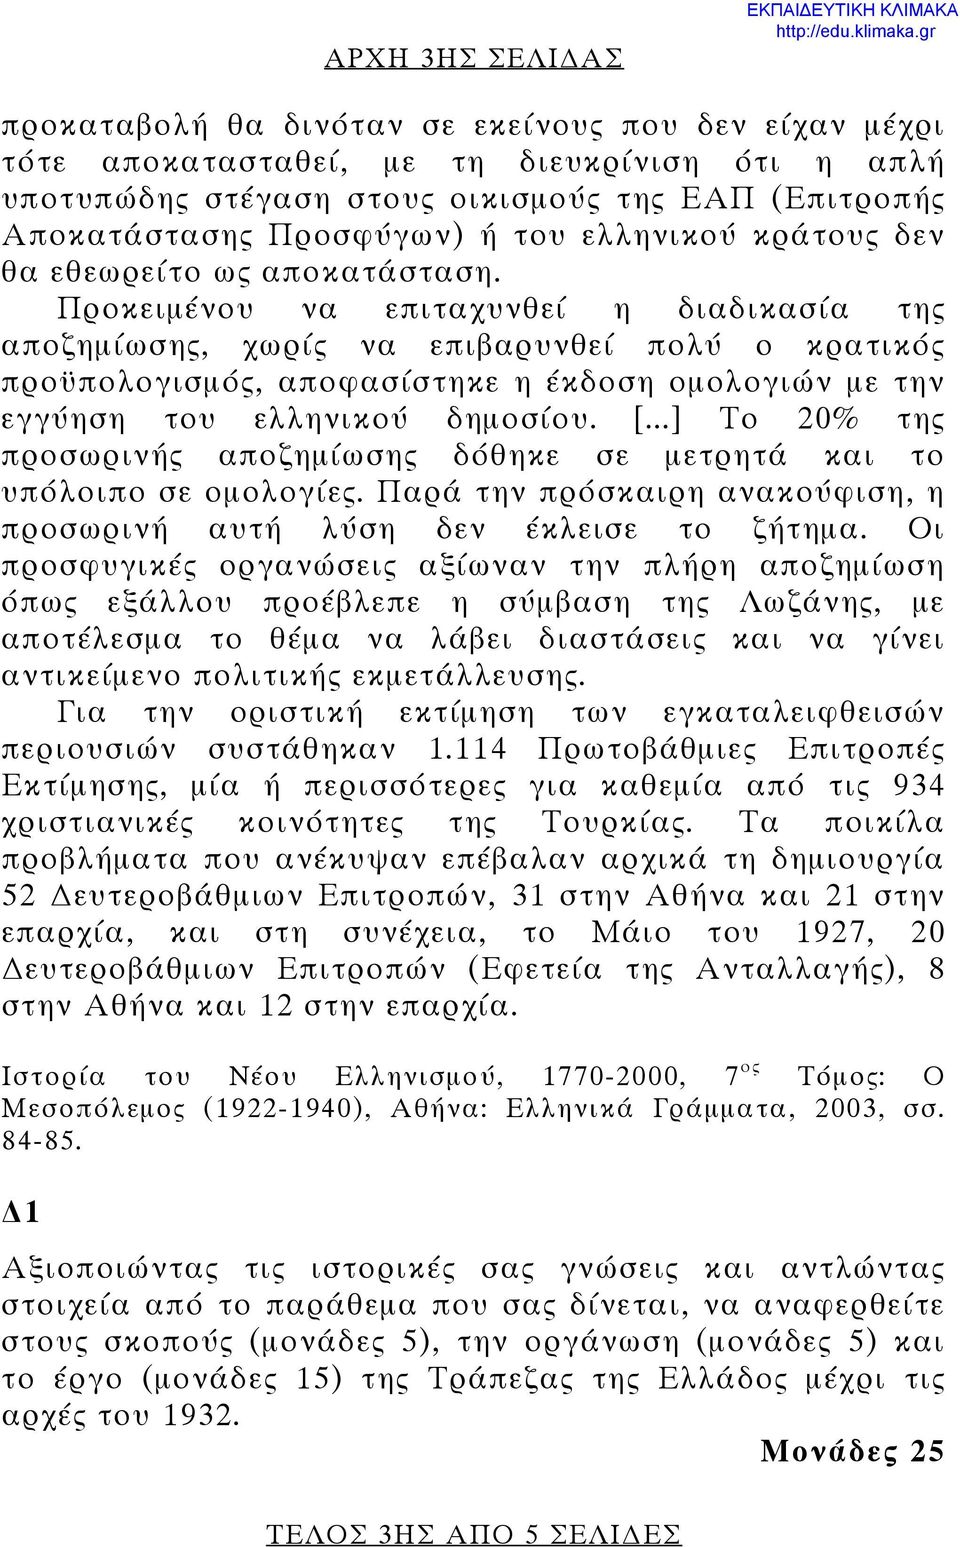 Προκειμένου να επιταχυνθεί η διαδικασία της αποζημίωσης, χωρίς να επιβαρυνθεί πολύ ο κρατικός προϋπολογισμός, αποφασίστηκε η έκδοση ομολογιών με την εγγύηση του ελληνικού δημοσίου. [.